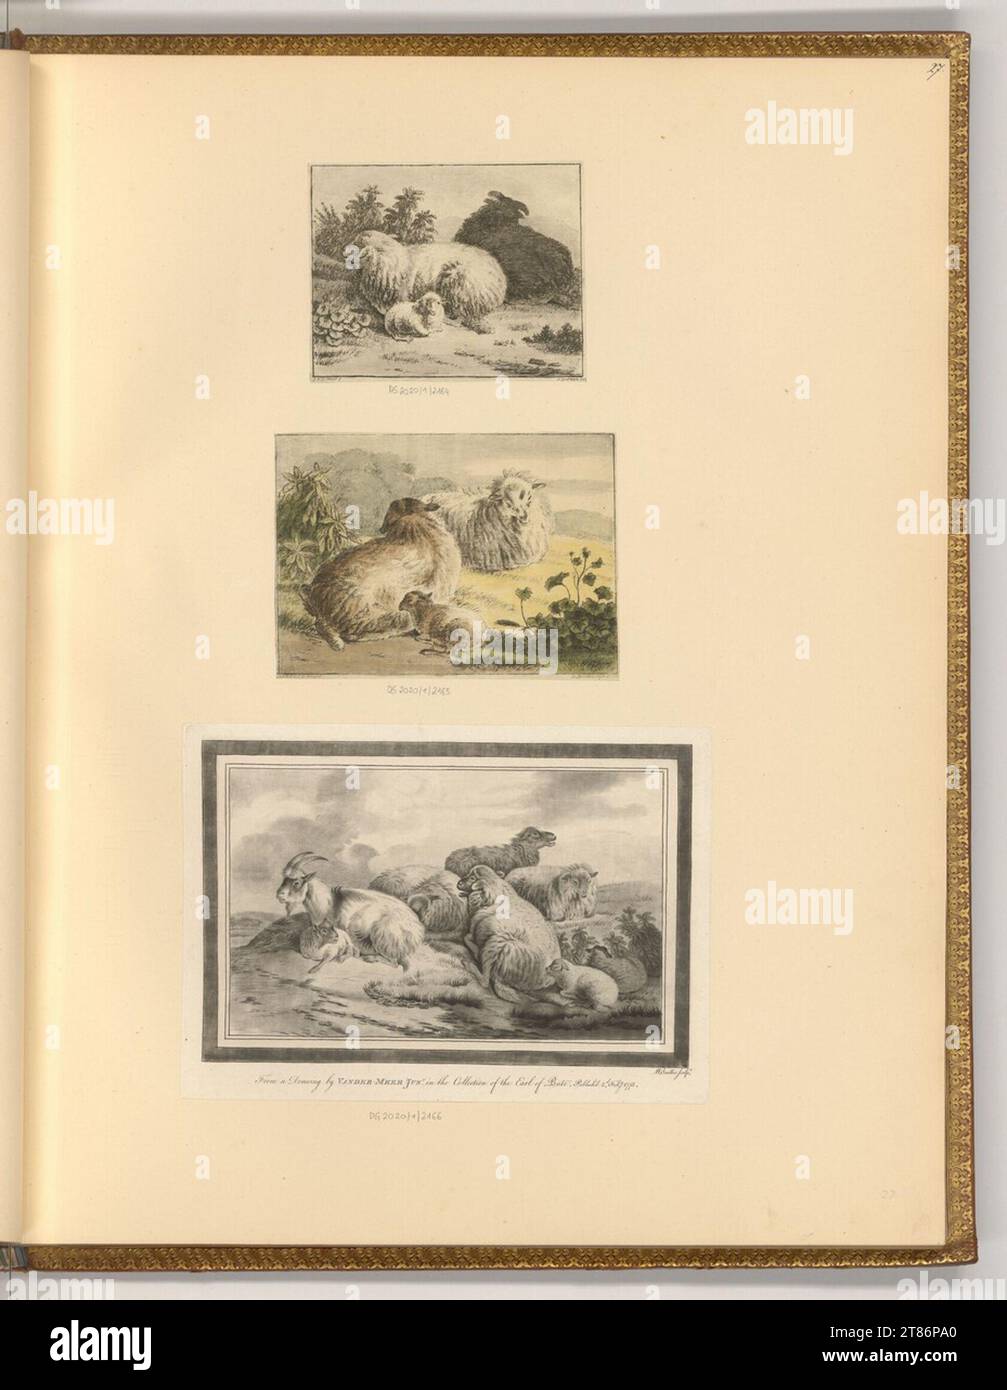 Henricus Spilman (incisore) giace pecore, capre e agnelli. Incisione, colorata; Crayonmanner; tono piatto 1740-1810 , 1740/1810 Foto Stock